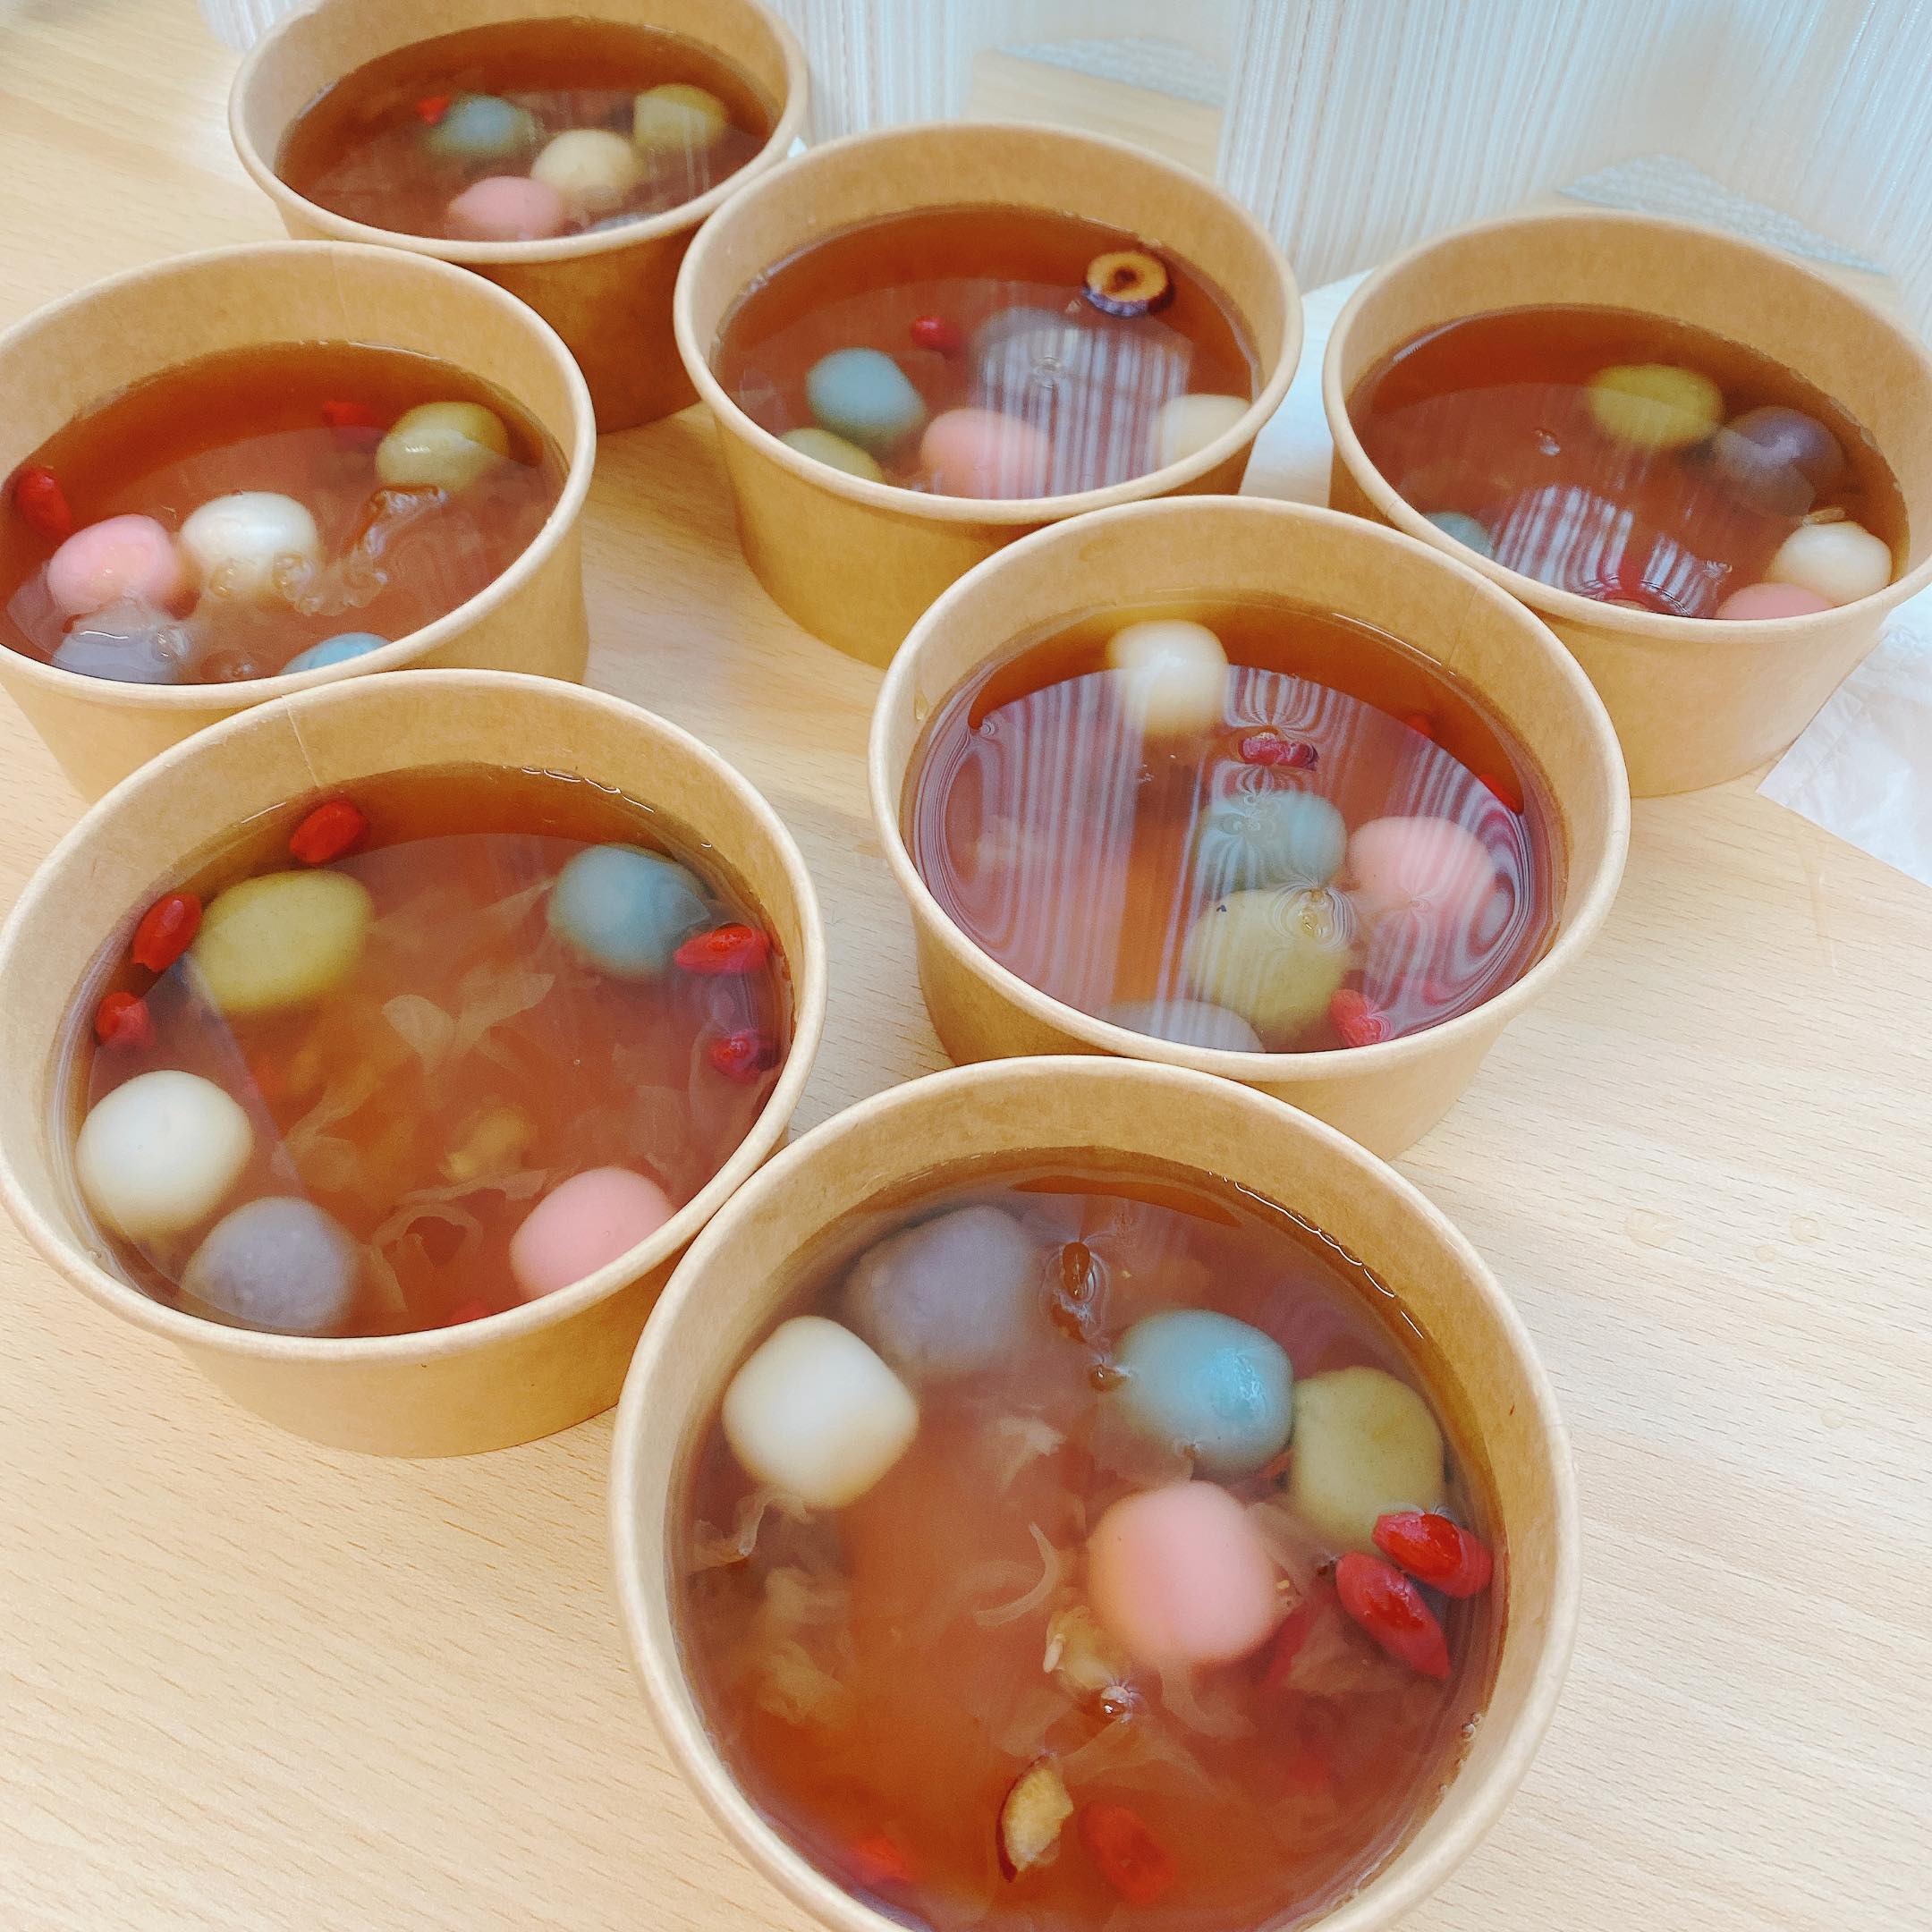 陳洳豔老師親手製作給大家品嚐的桂圓冰糖五行開運湯圓甜湯